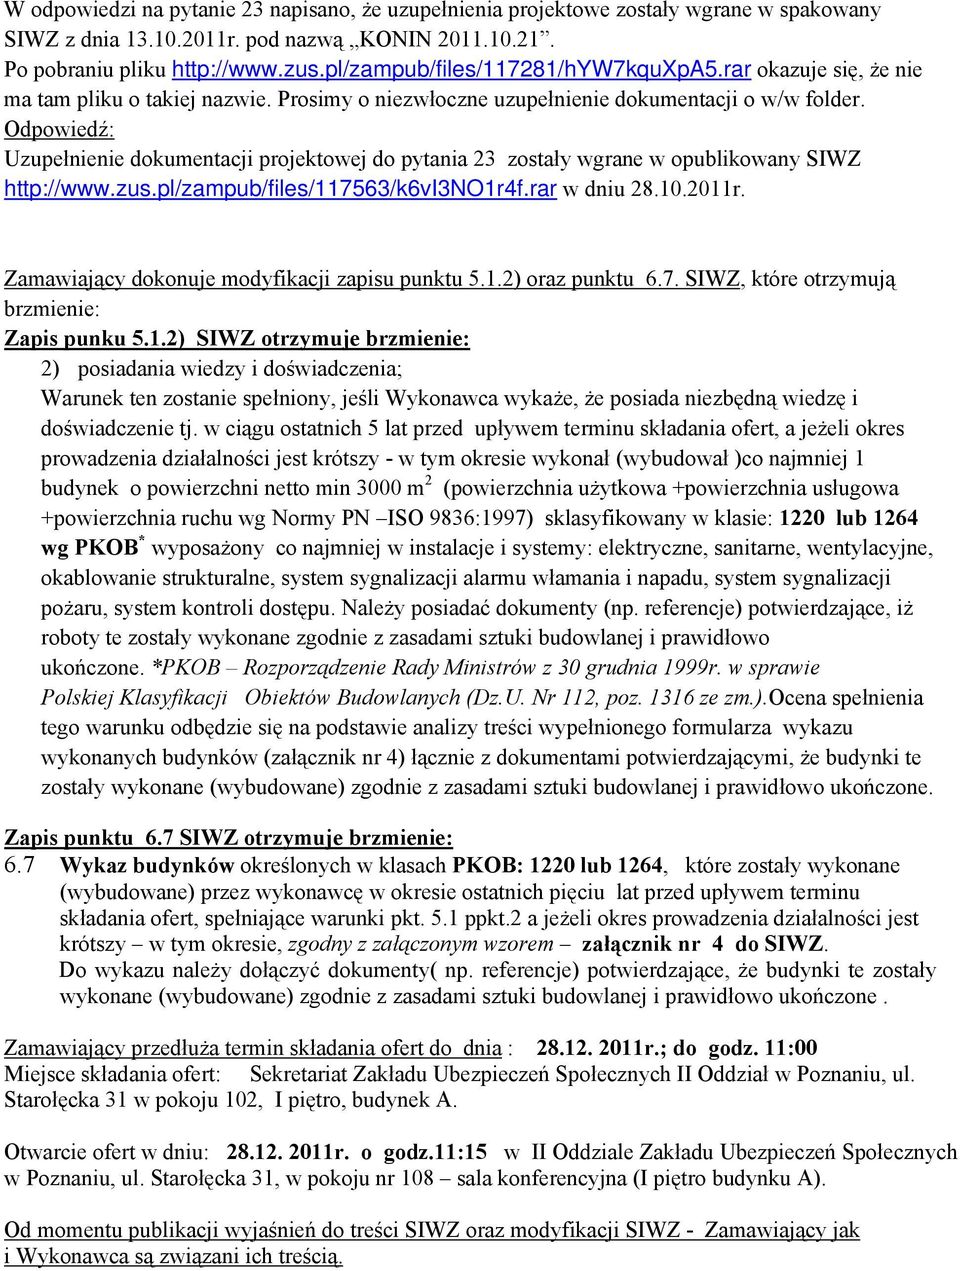 Uzupełnienie dokumentacji projektowej do pytania 23 zostały wgrane w opublikowany SIWZ http://www.zus.pl/zampub/files/117563/k6vi3no1r4f.rar w dniu 28.10.2011r.